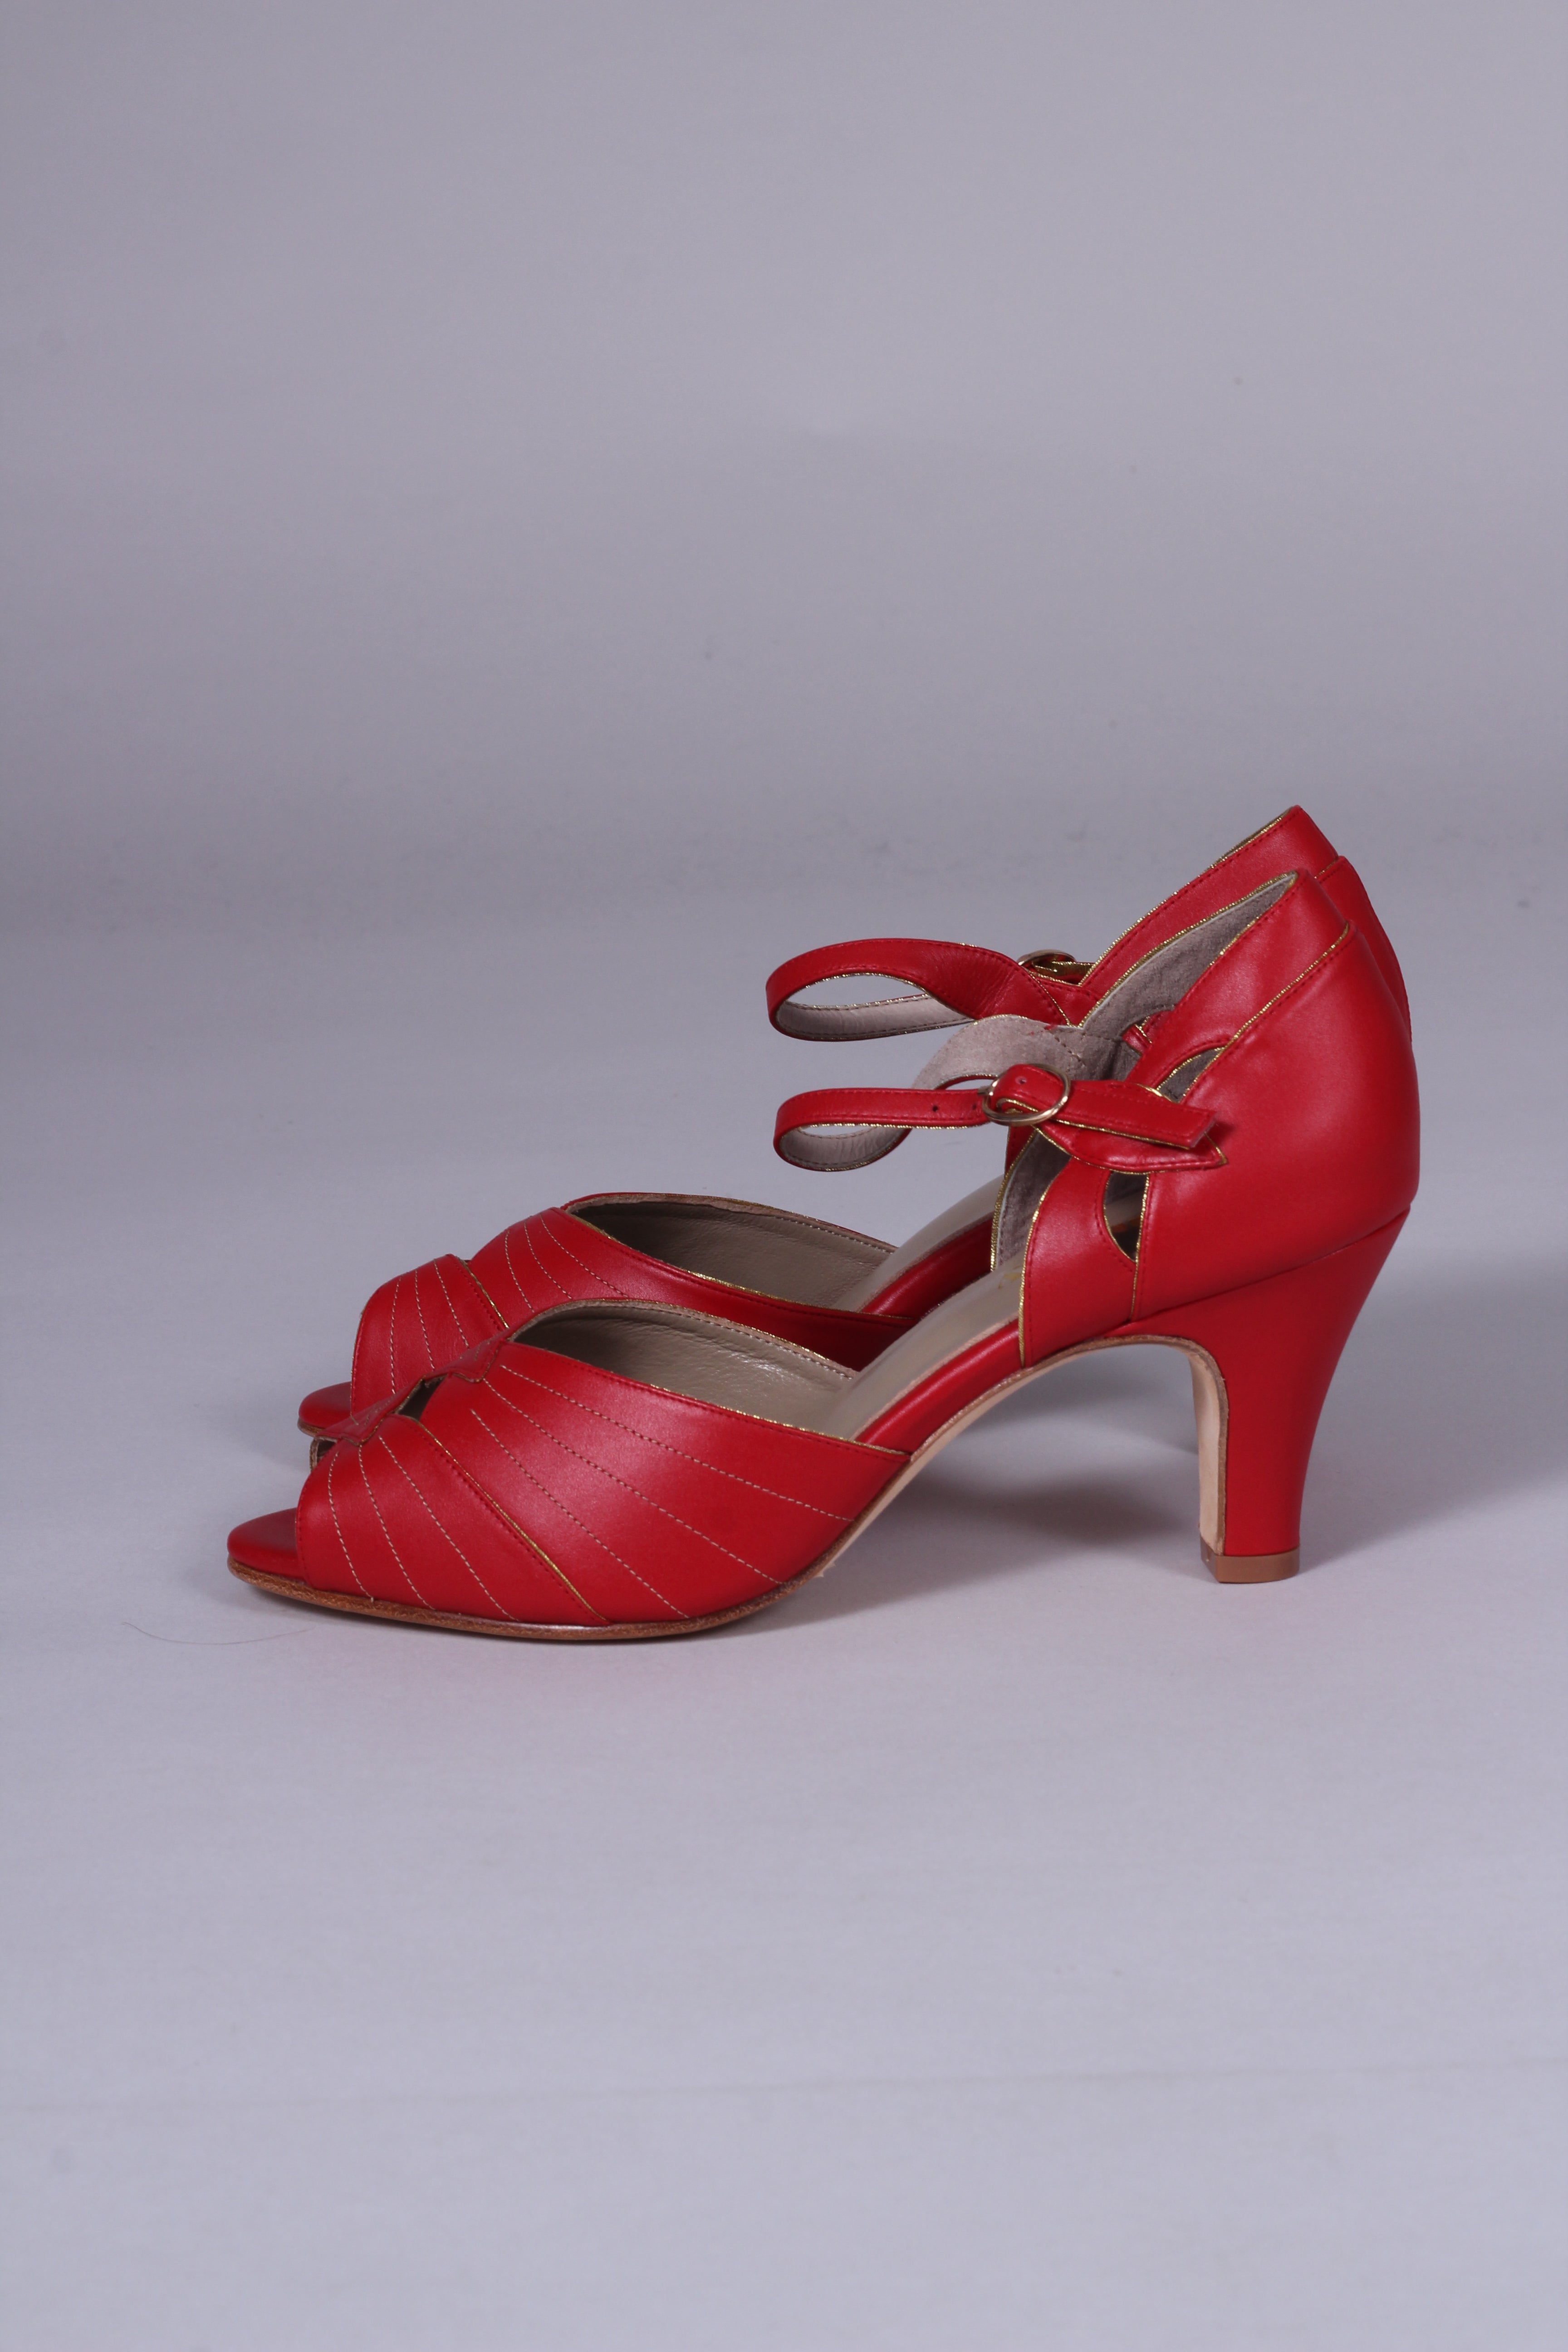 1930'er vintage style Spanish medium høj hæl - Rød Susan – memery